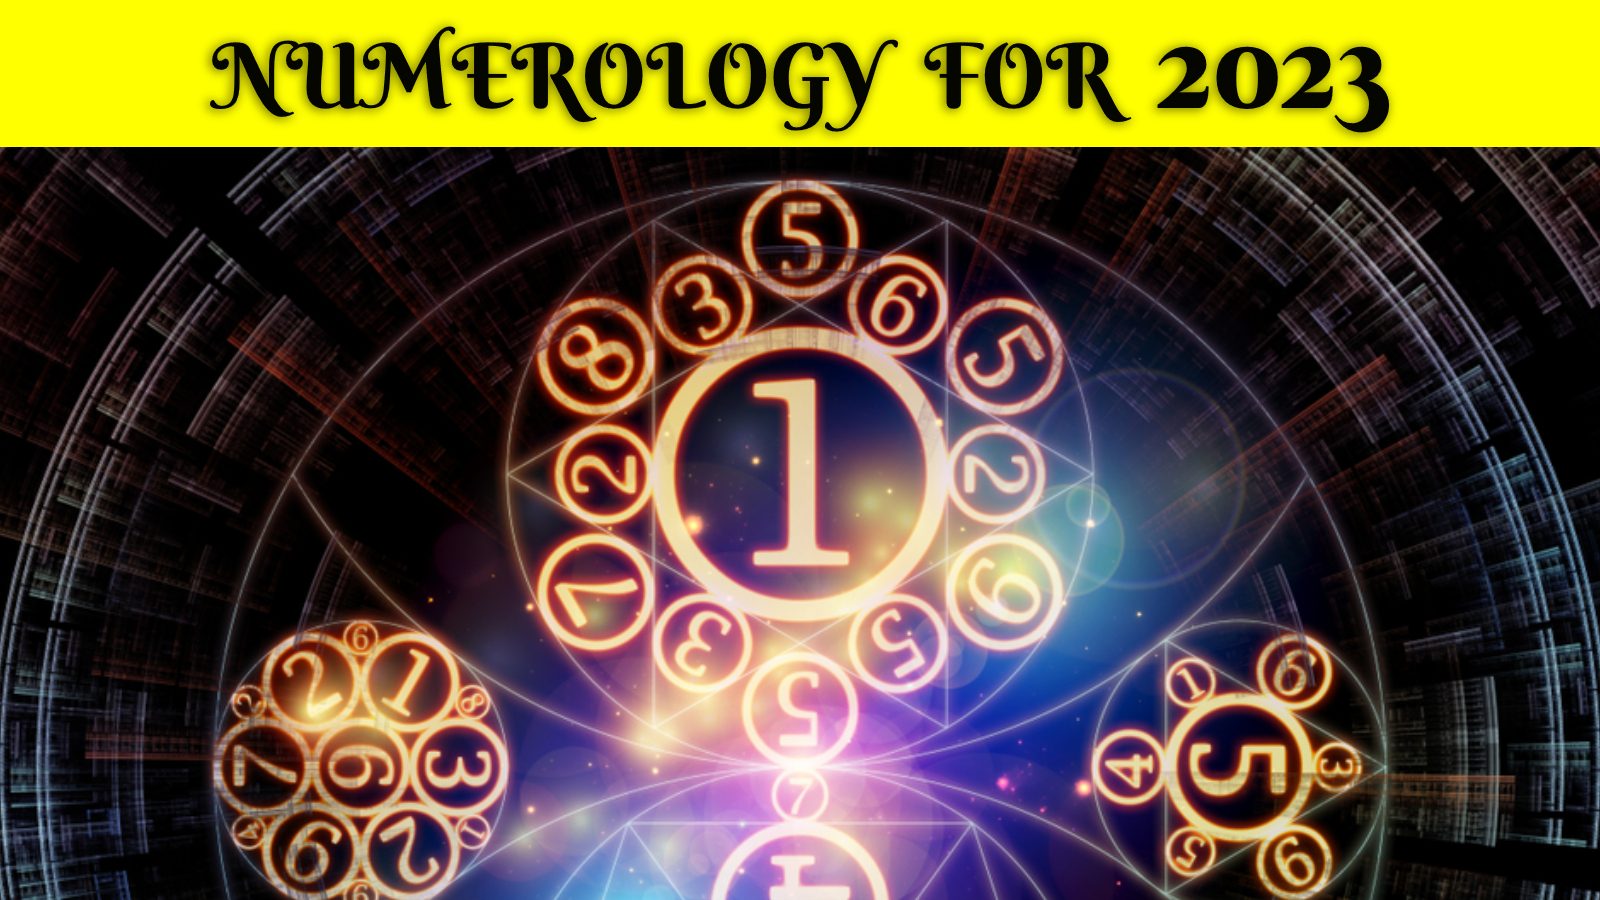 2 से 8 जनवरी 2023 तक साप्ताहिक अंकज्योतिष भविष्यवाणियां